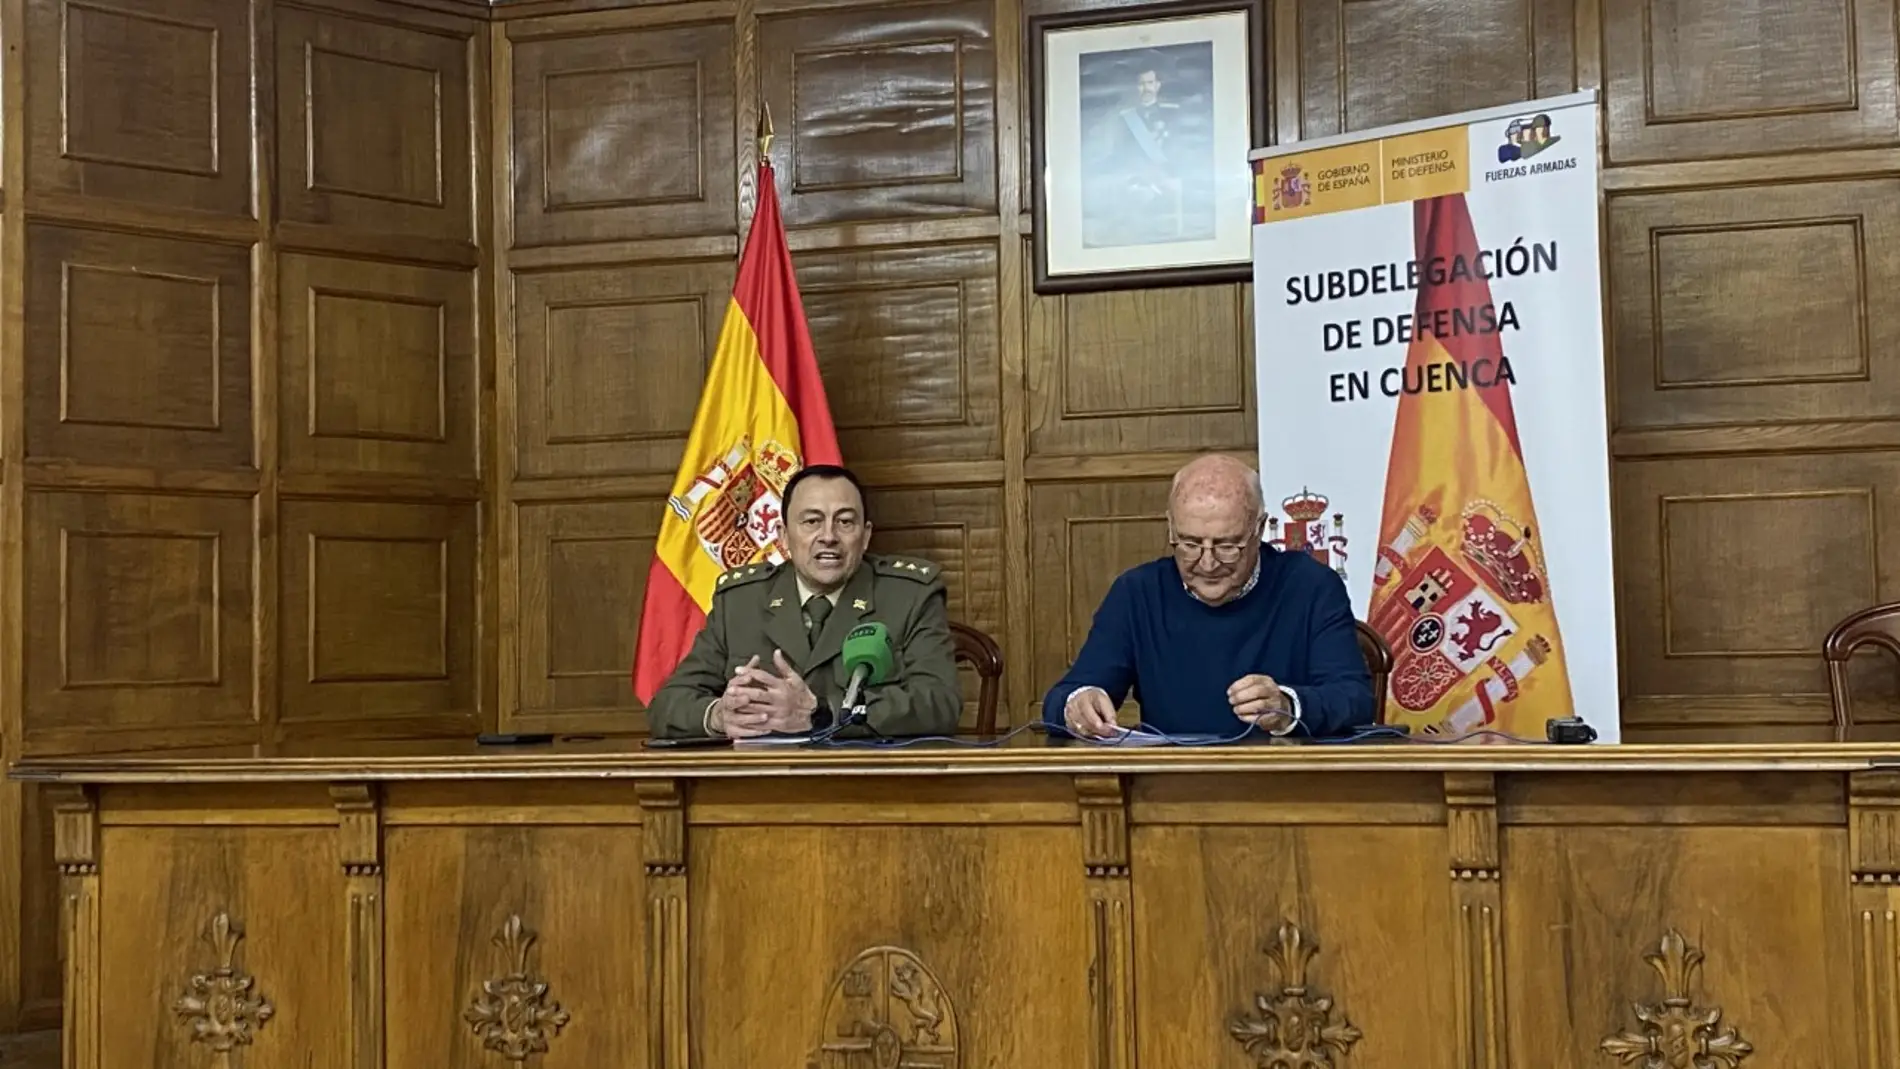 El subdelegado de Defensa en Cuenca, el coronel Antón, junto al historiador y cronista oficial de la ciudad, Miguel Romero, en la presentación de las actividades 